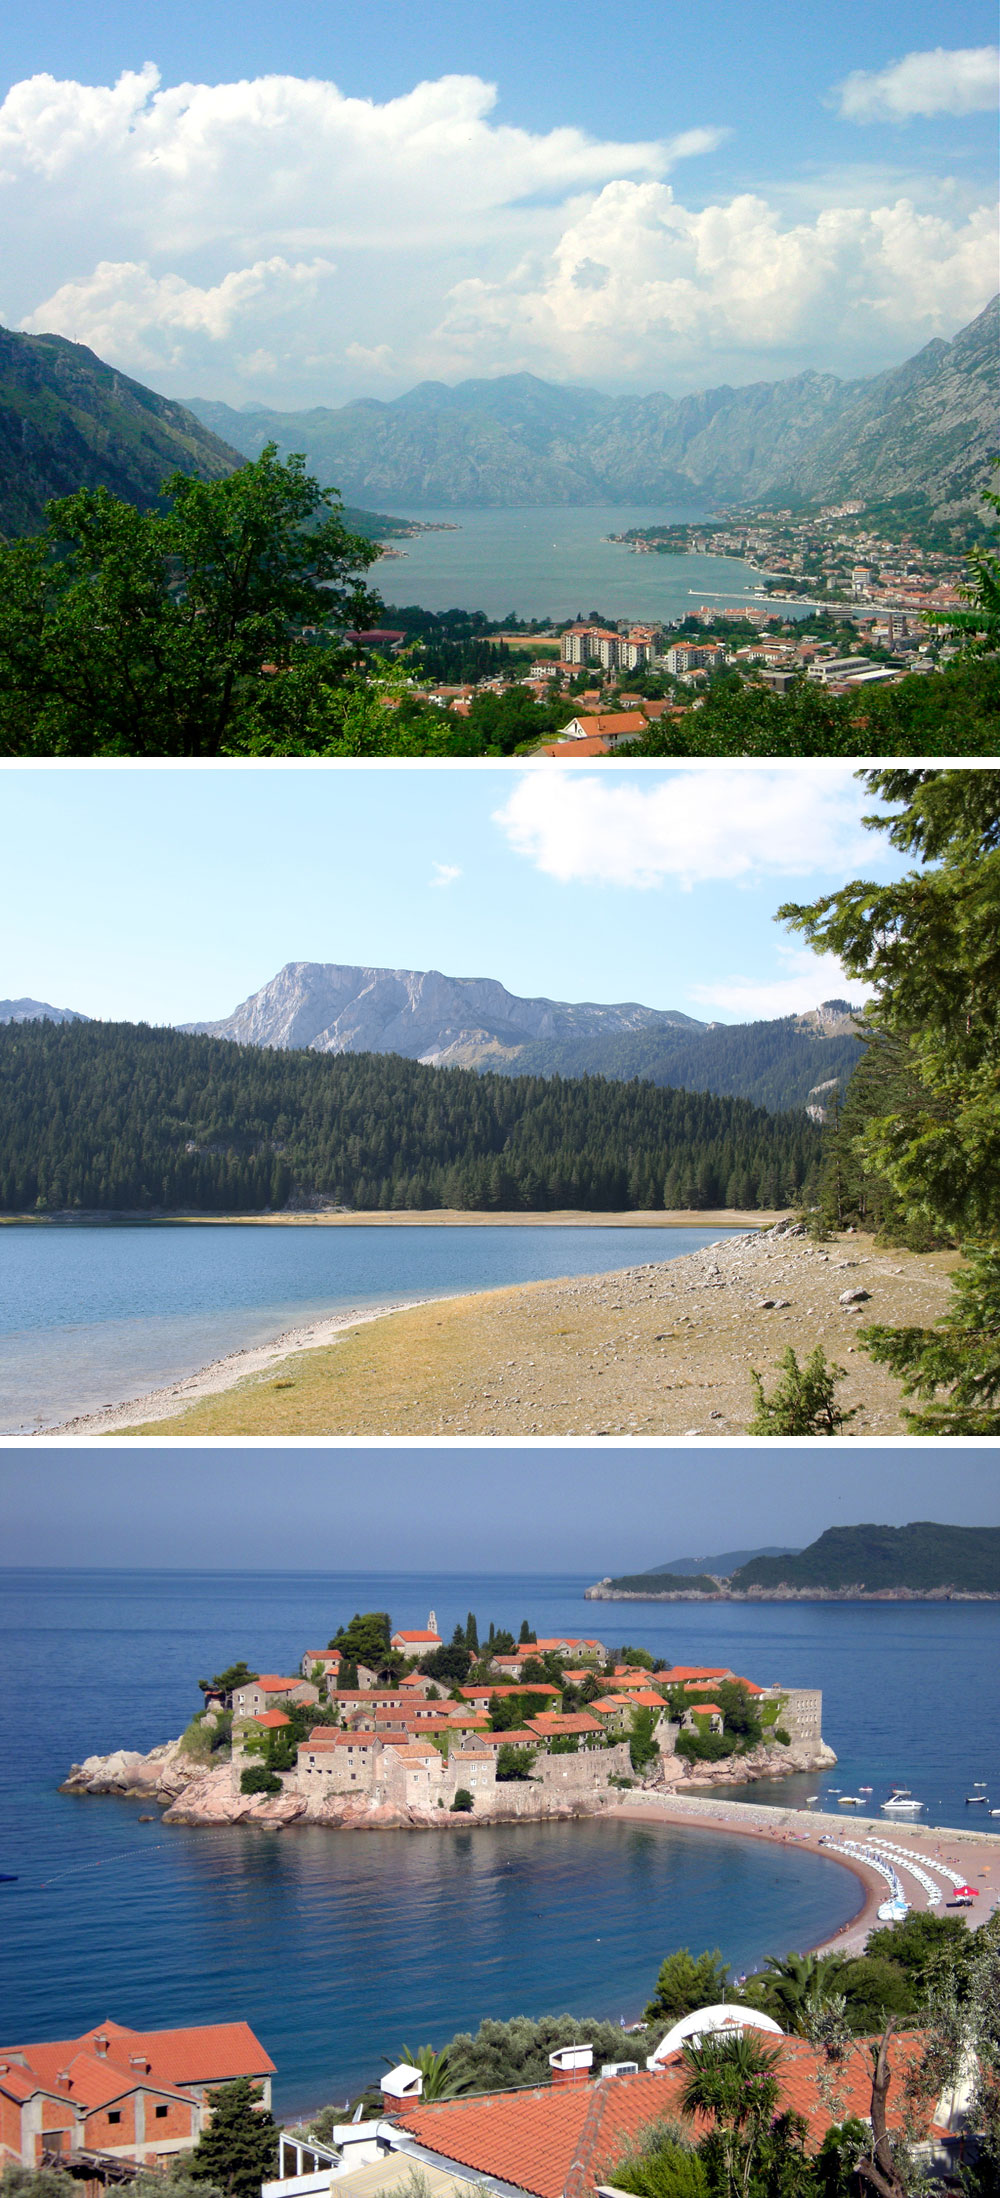 Fakta: Montenegros landskab er kendetegnet ved en kystlinje med bjerge.